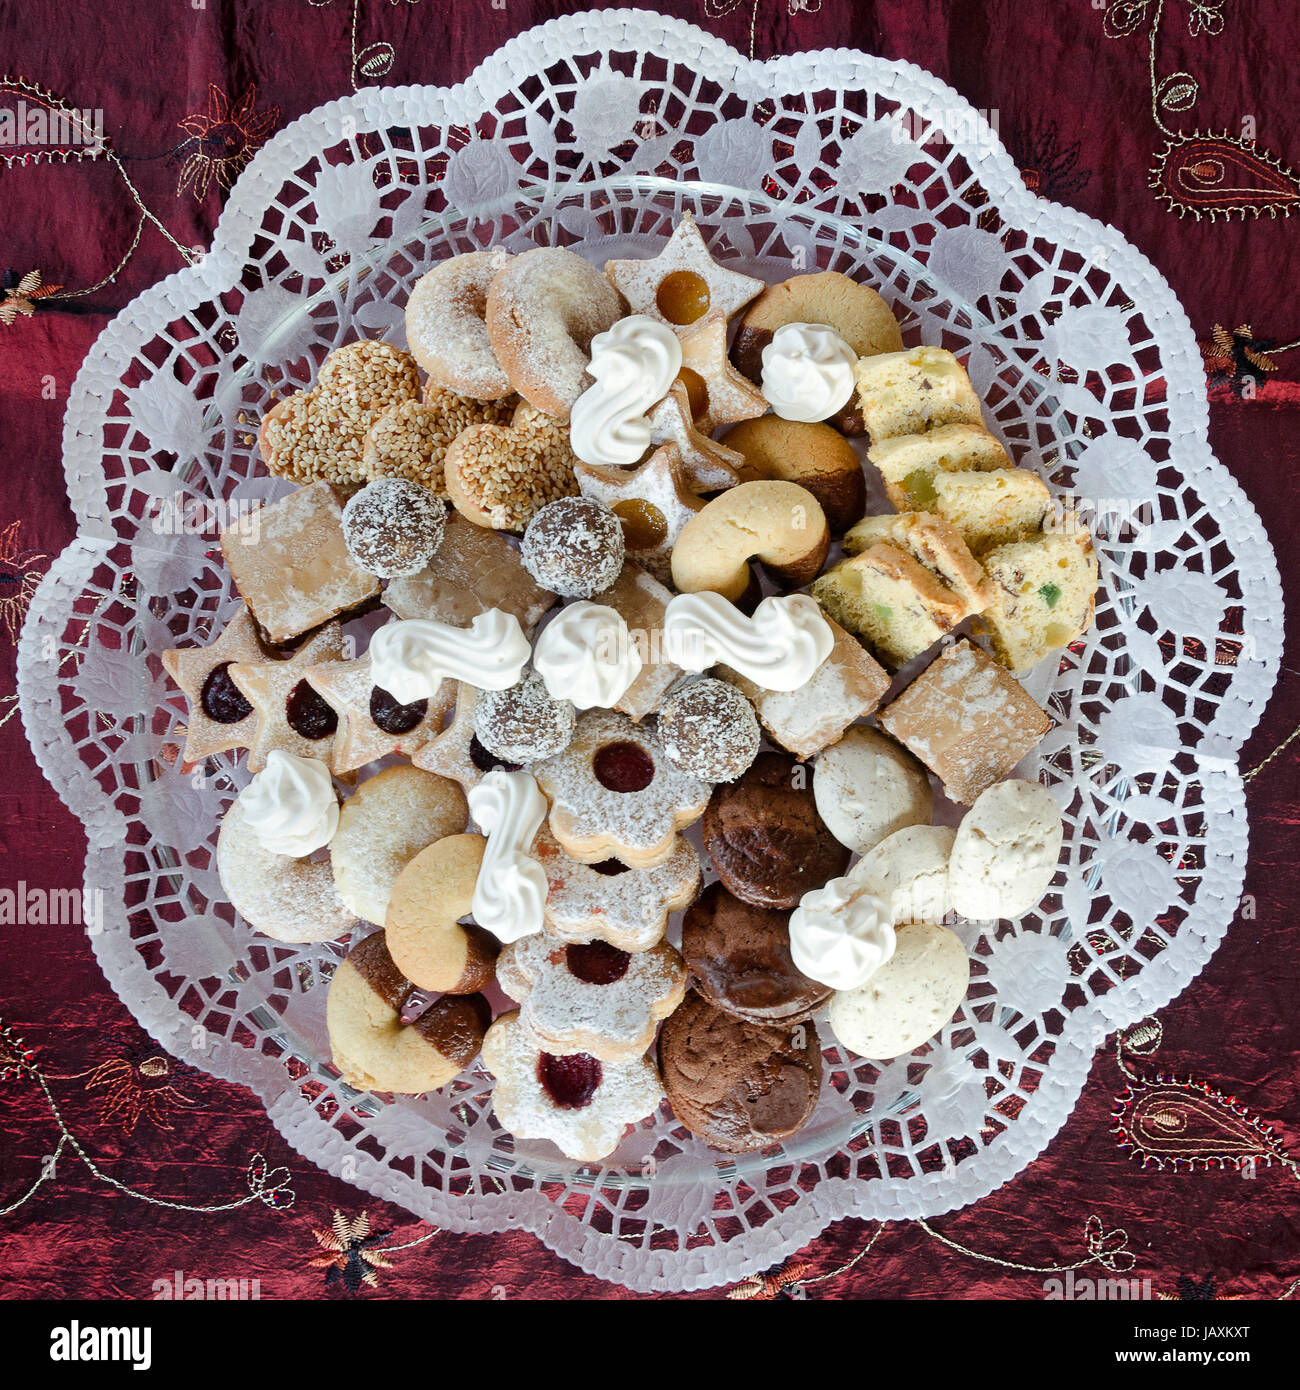 Eine mit Tortenpapier ausgelegte Schale mit hausgemachten Keksen; a platter with doily covered by homemade biscuits Stock Photo